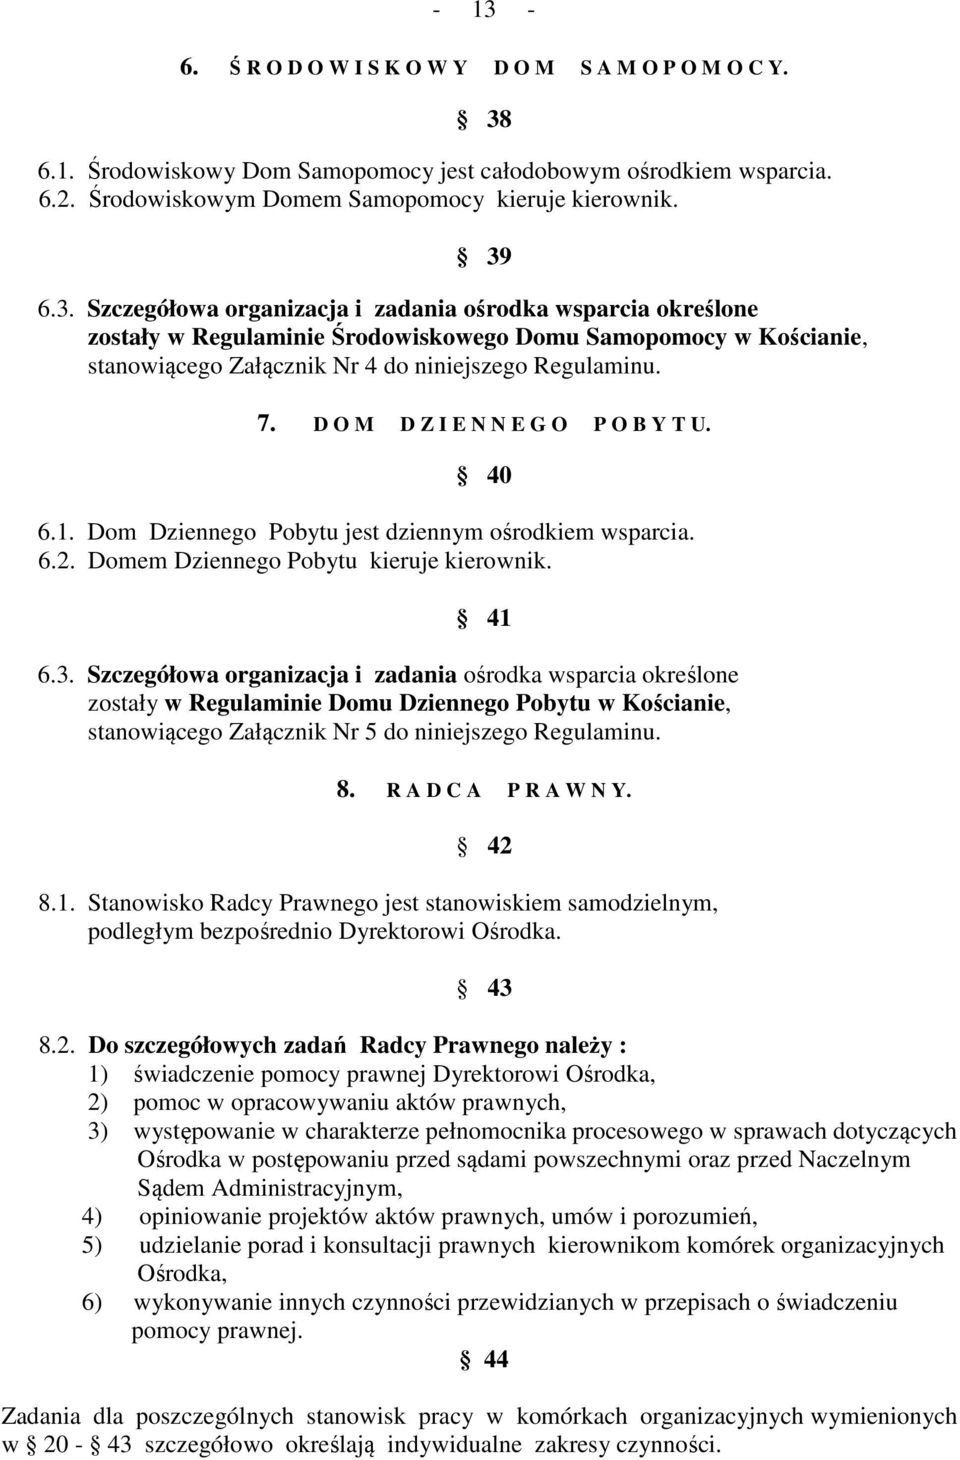 Szczegółowa organizacja i zadania ośrodka wsparcia określone zostały w Regulaminie Domu Dziennego Pobytu w Kościanie, stanowiącego Załącznik Nr 5 do niniejszego Regulaminu. 8. R A D C A P R A W N Y.